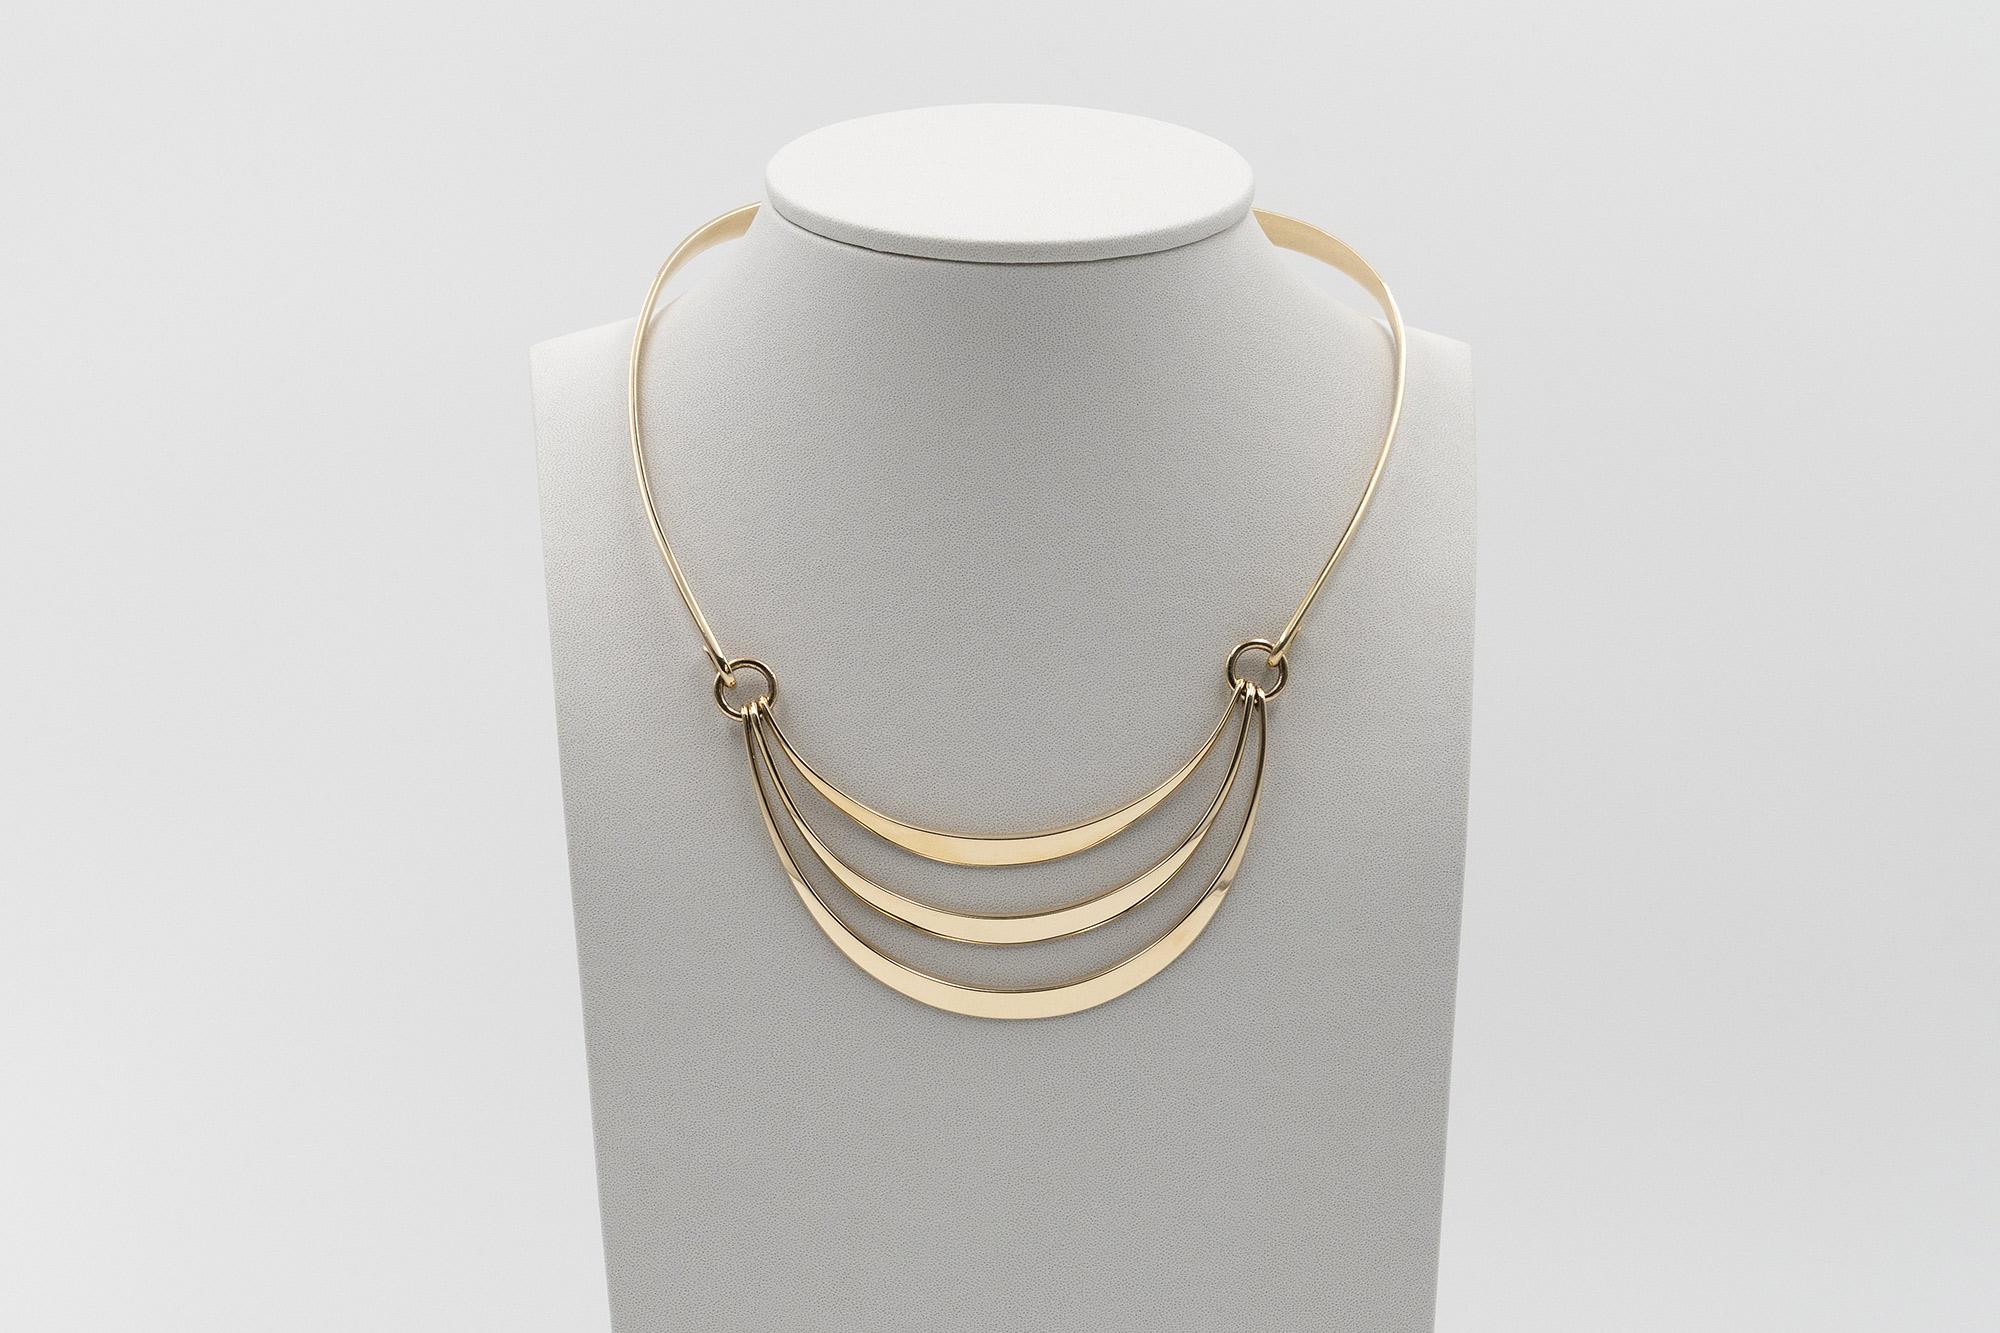 A  Starre Halskette aus 14-karätigem Gold mit drei gelenkigen Elementen, entworfen von der dänischen Manufaktur 